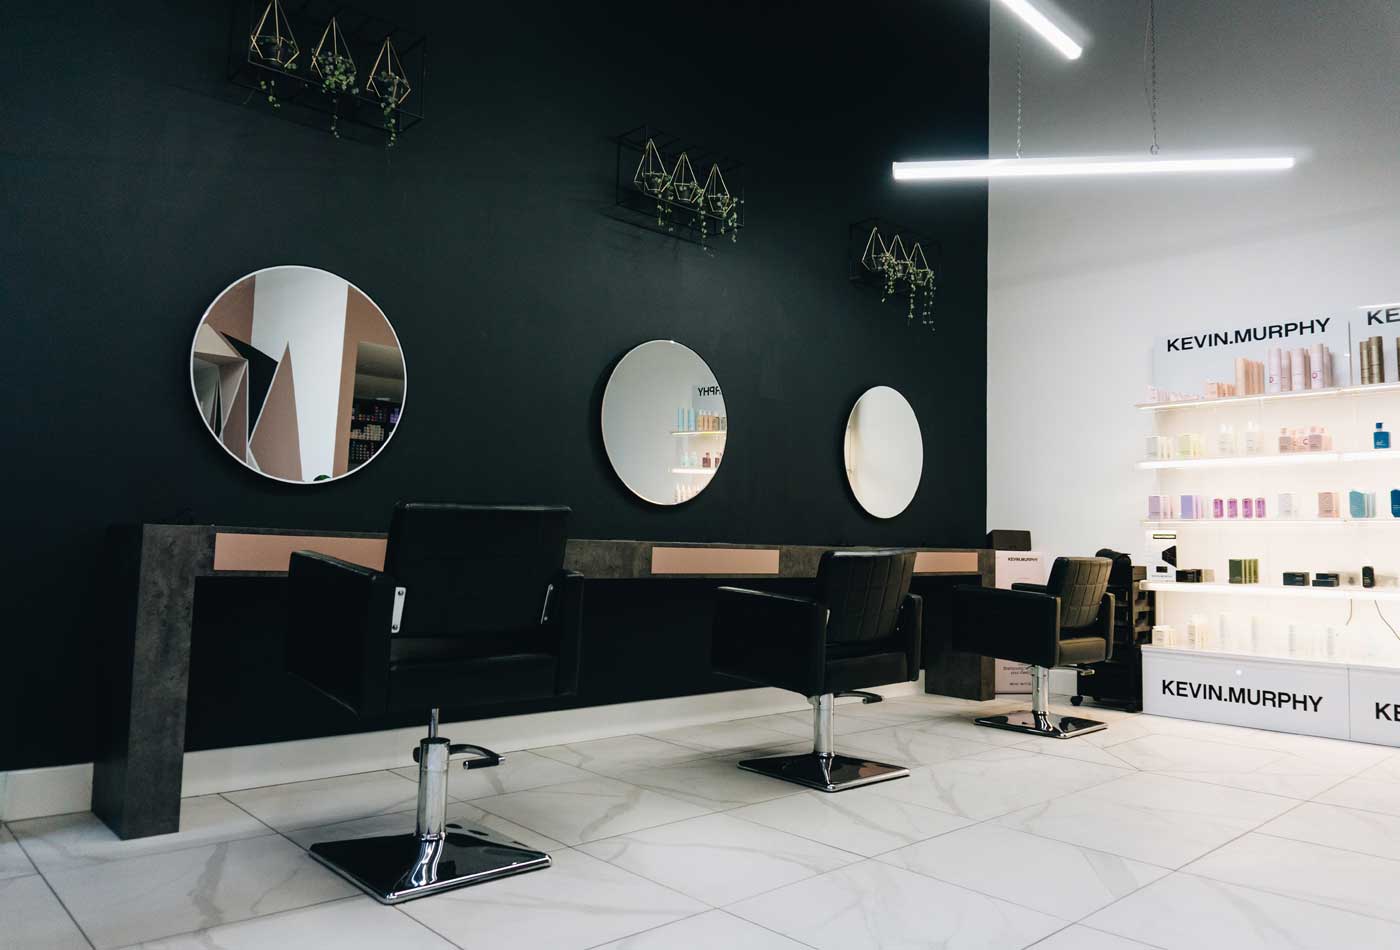 Opening a salon - Shows a stylish salon interior